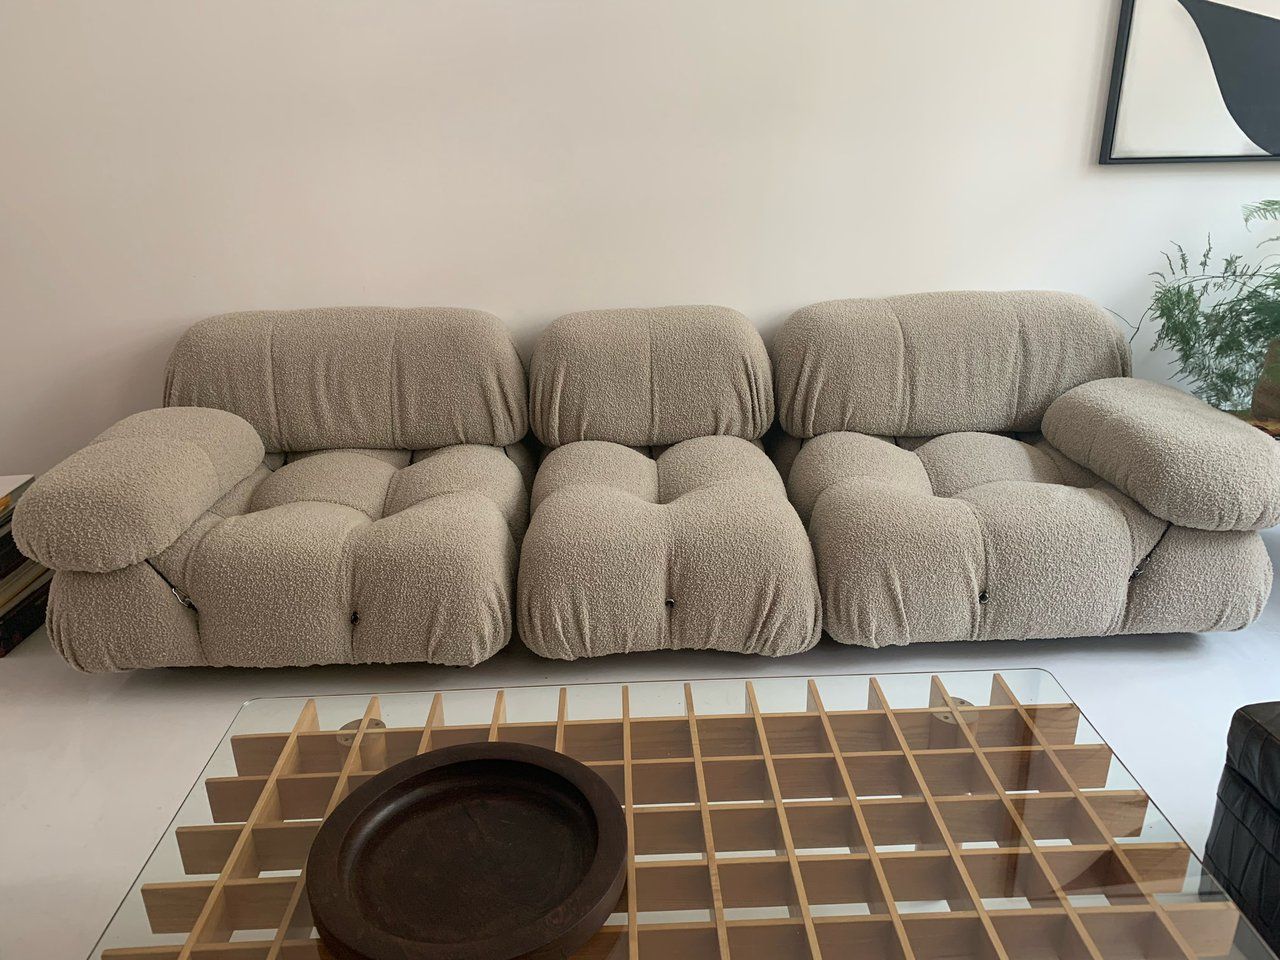 design meubels kopen - Grote voorraad bij Whoppah | Whoppah